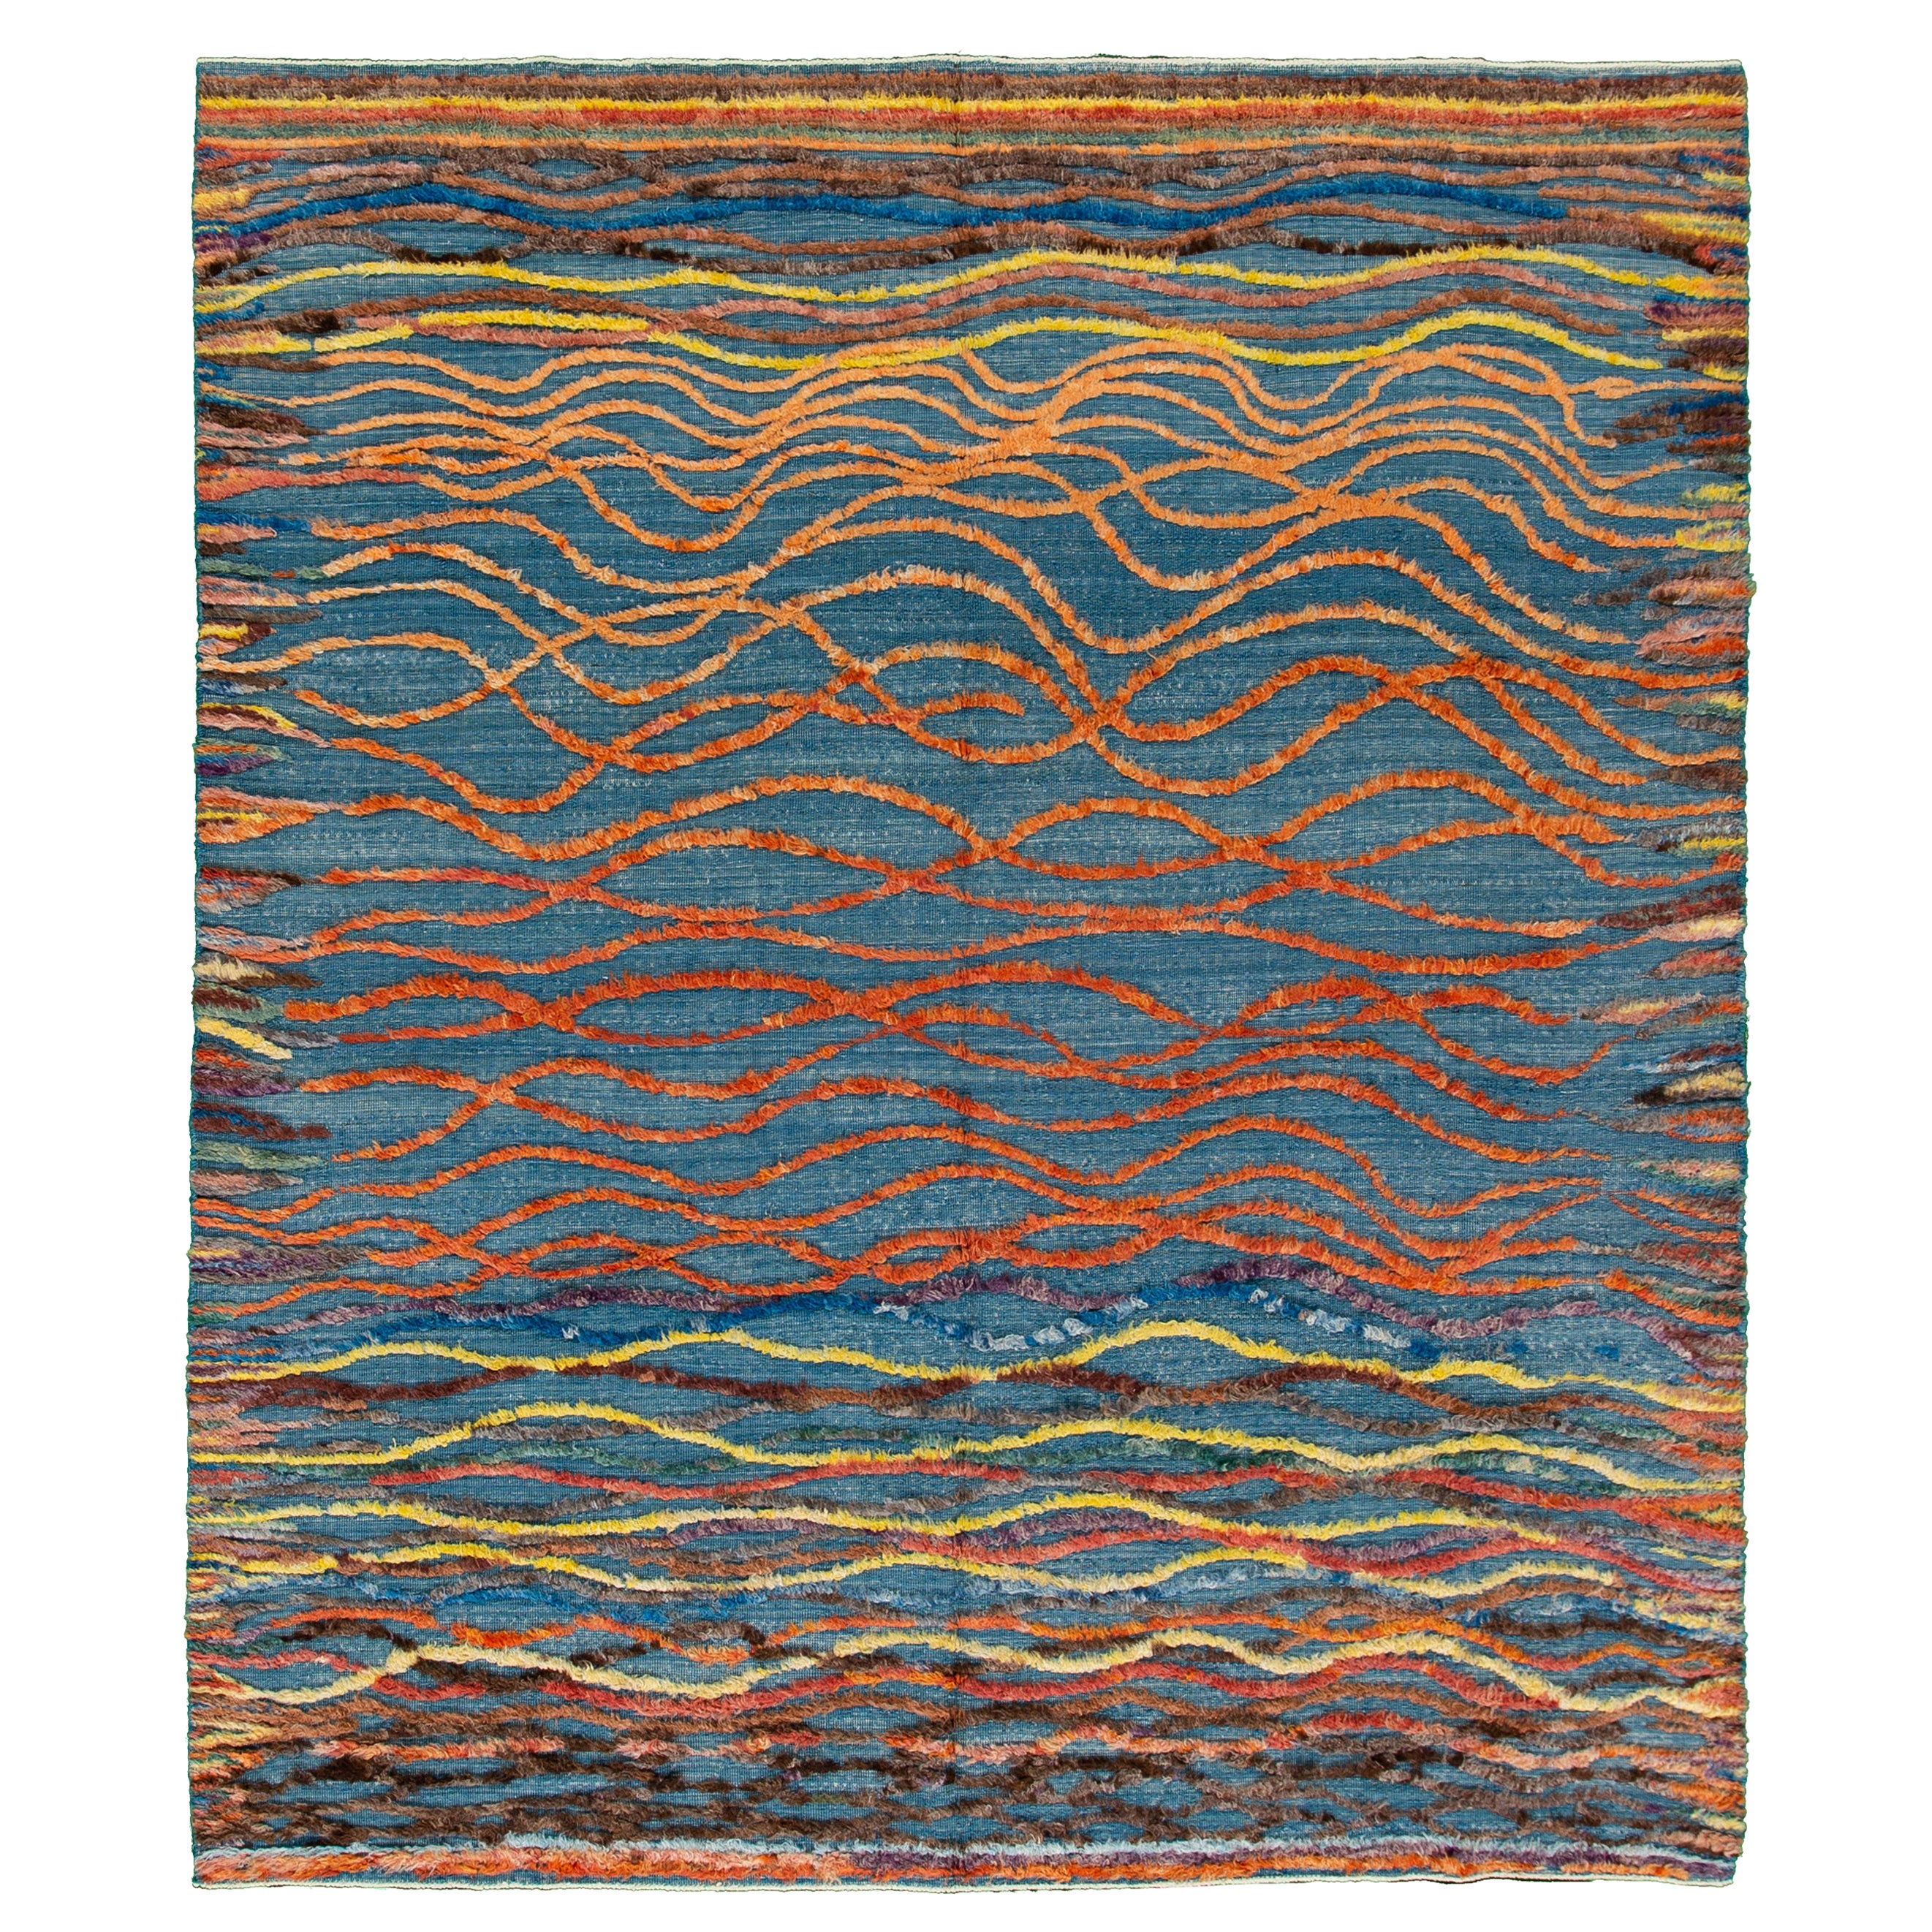 Tapis en laine bleu de style marocain moderne avec motif abstrait multicolore sur toute sa surface